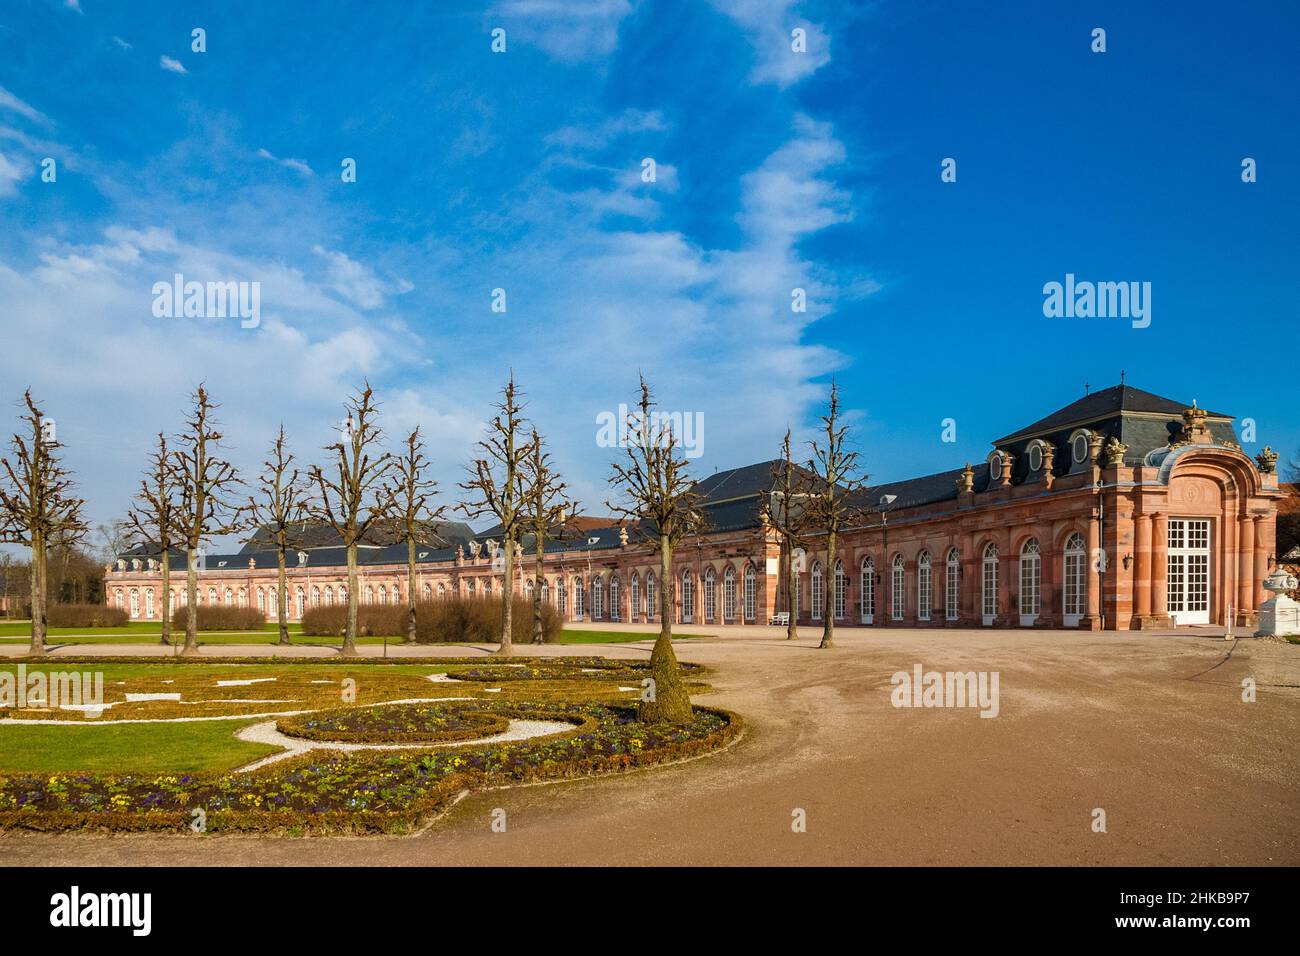 Schöner Blick auf eines der beiden symmetrisch geschwungenen Nebengebäude (die Zirkelbauten) an der Gartenfront des Schlosses Schwetzingen. Die geschwungene façade des... Stockfoto